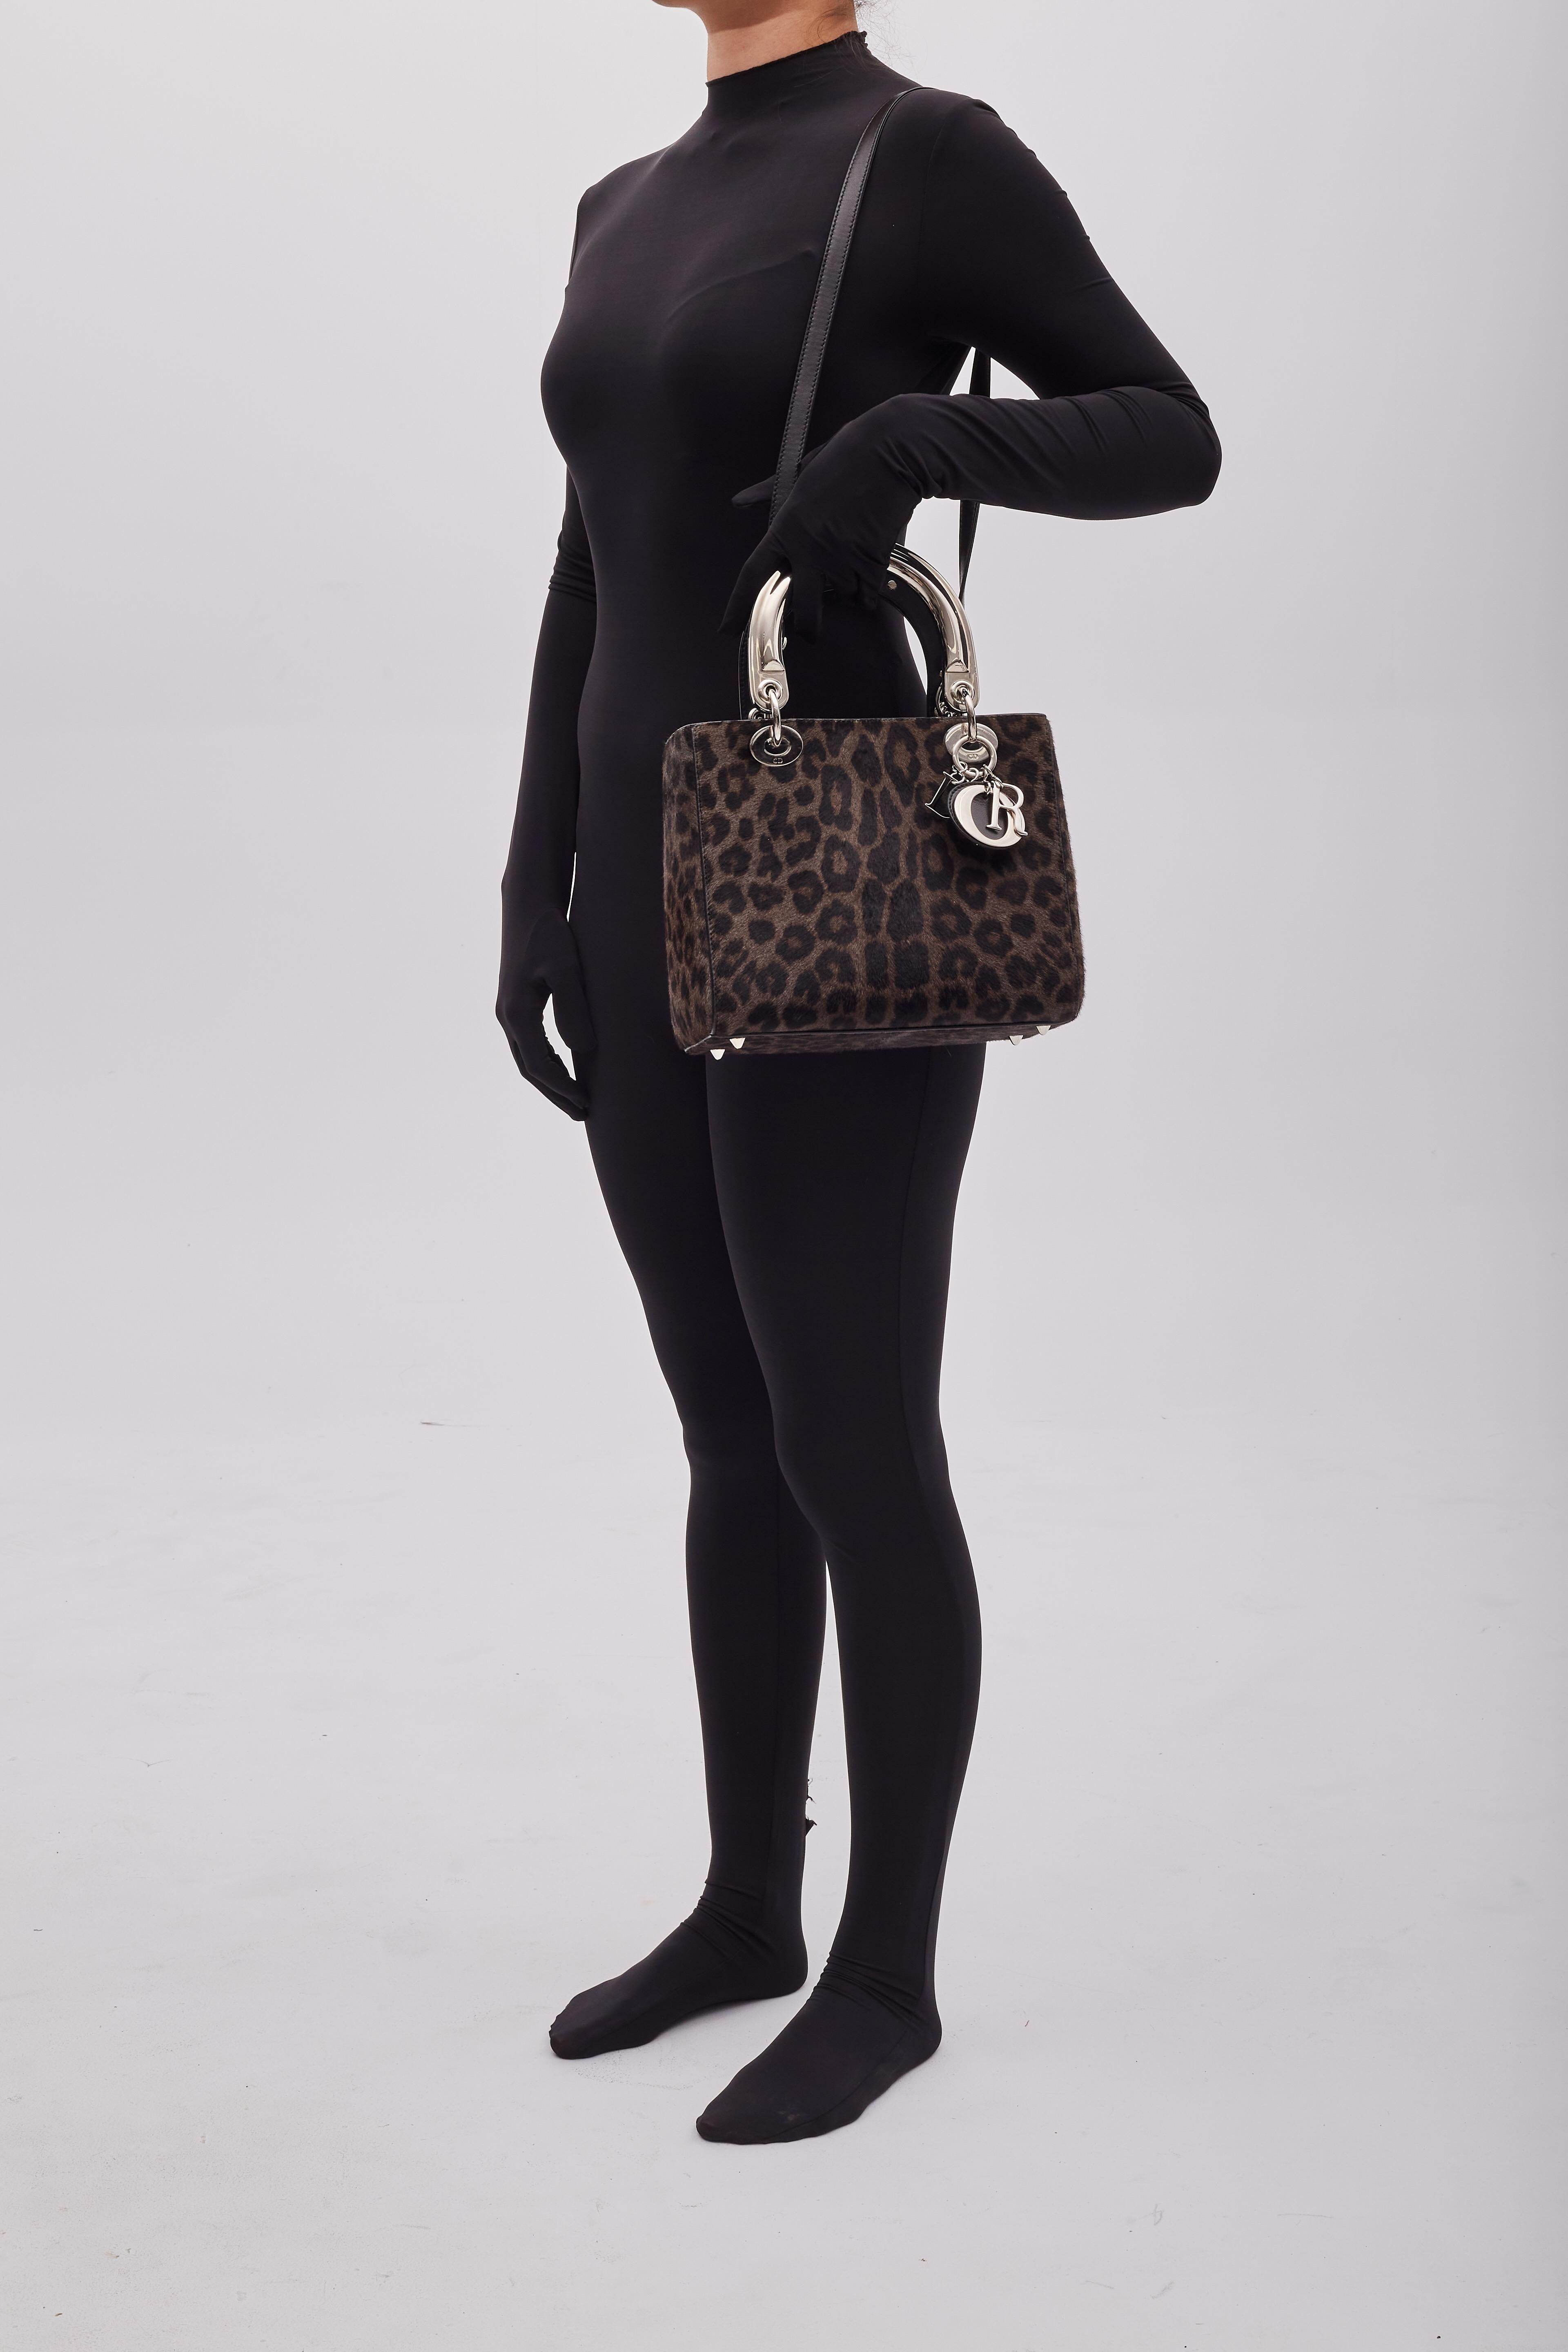 Diese Tasche von Christian Dior stammt aus der Collection'S 2013 von Raf Simons. Die Tasche ist aus braunem Ponyhaar mit Leopardenmuster, silberfarbenen Beschlägen, schützenden Füßen am Boden, flachen, doppelten Henkeln und einem ansteckbaren